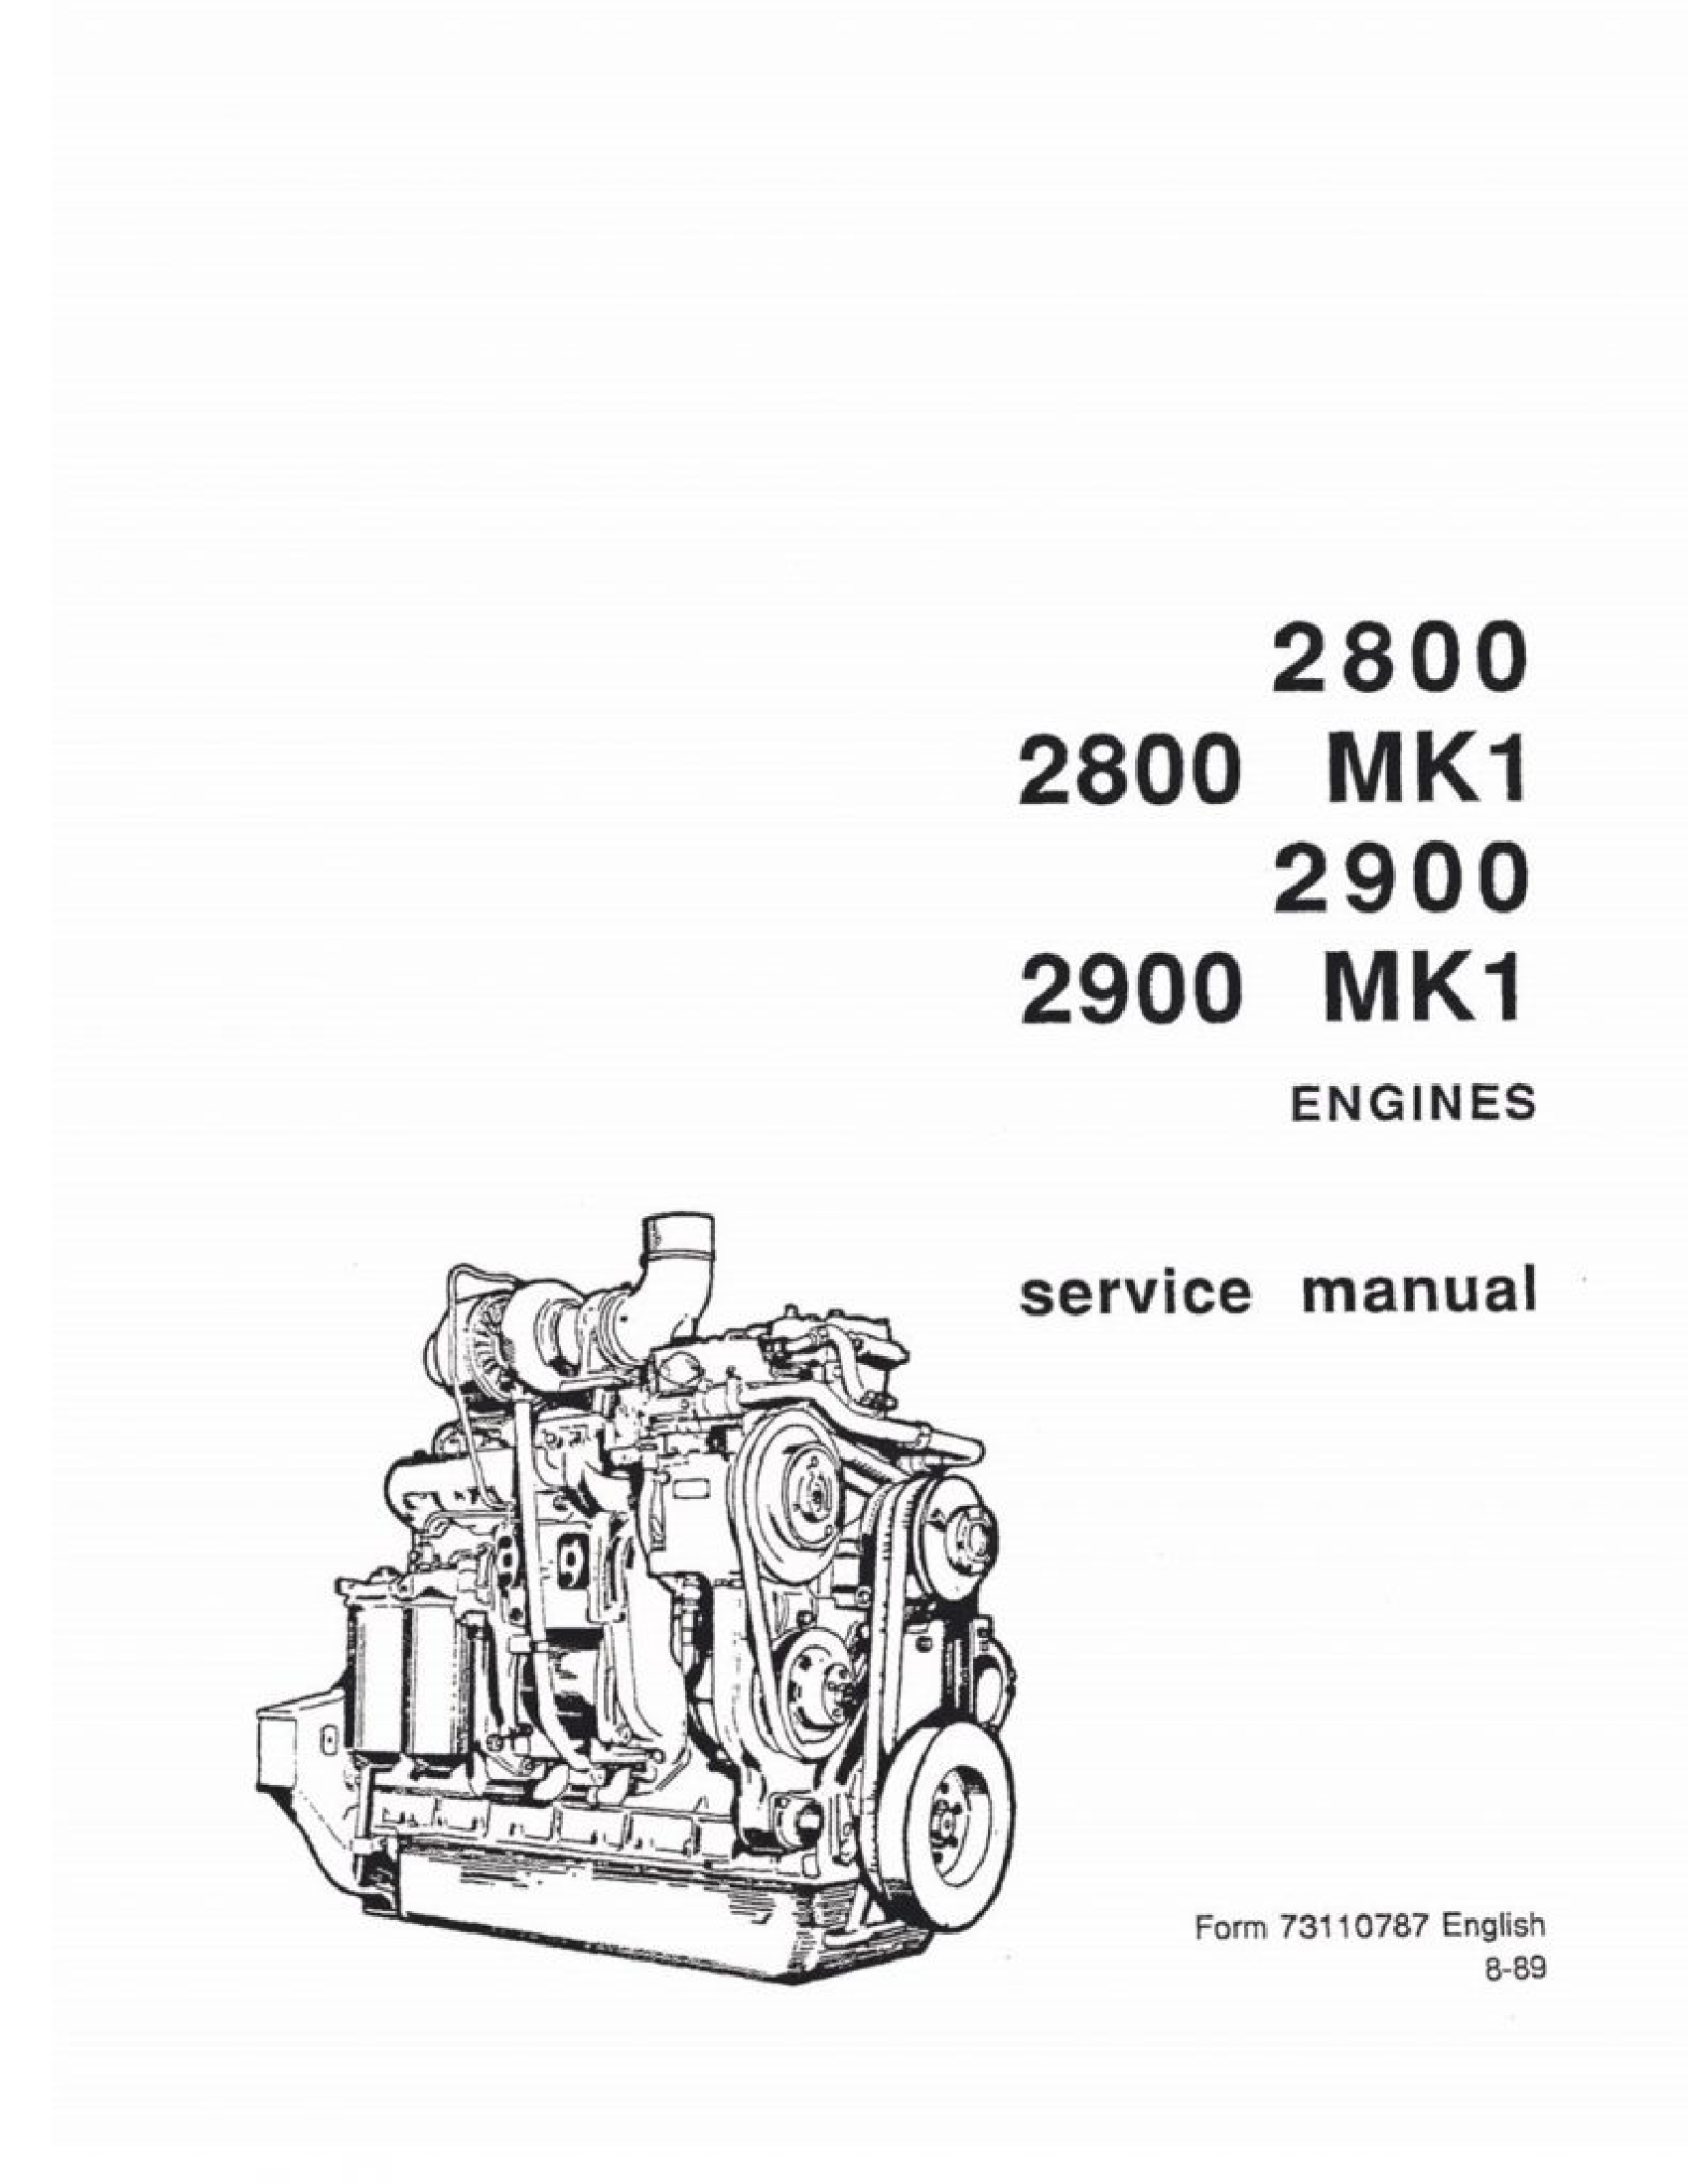 Fiat-Allis 2800 Engines manual